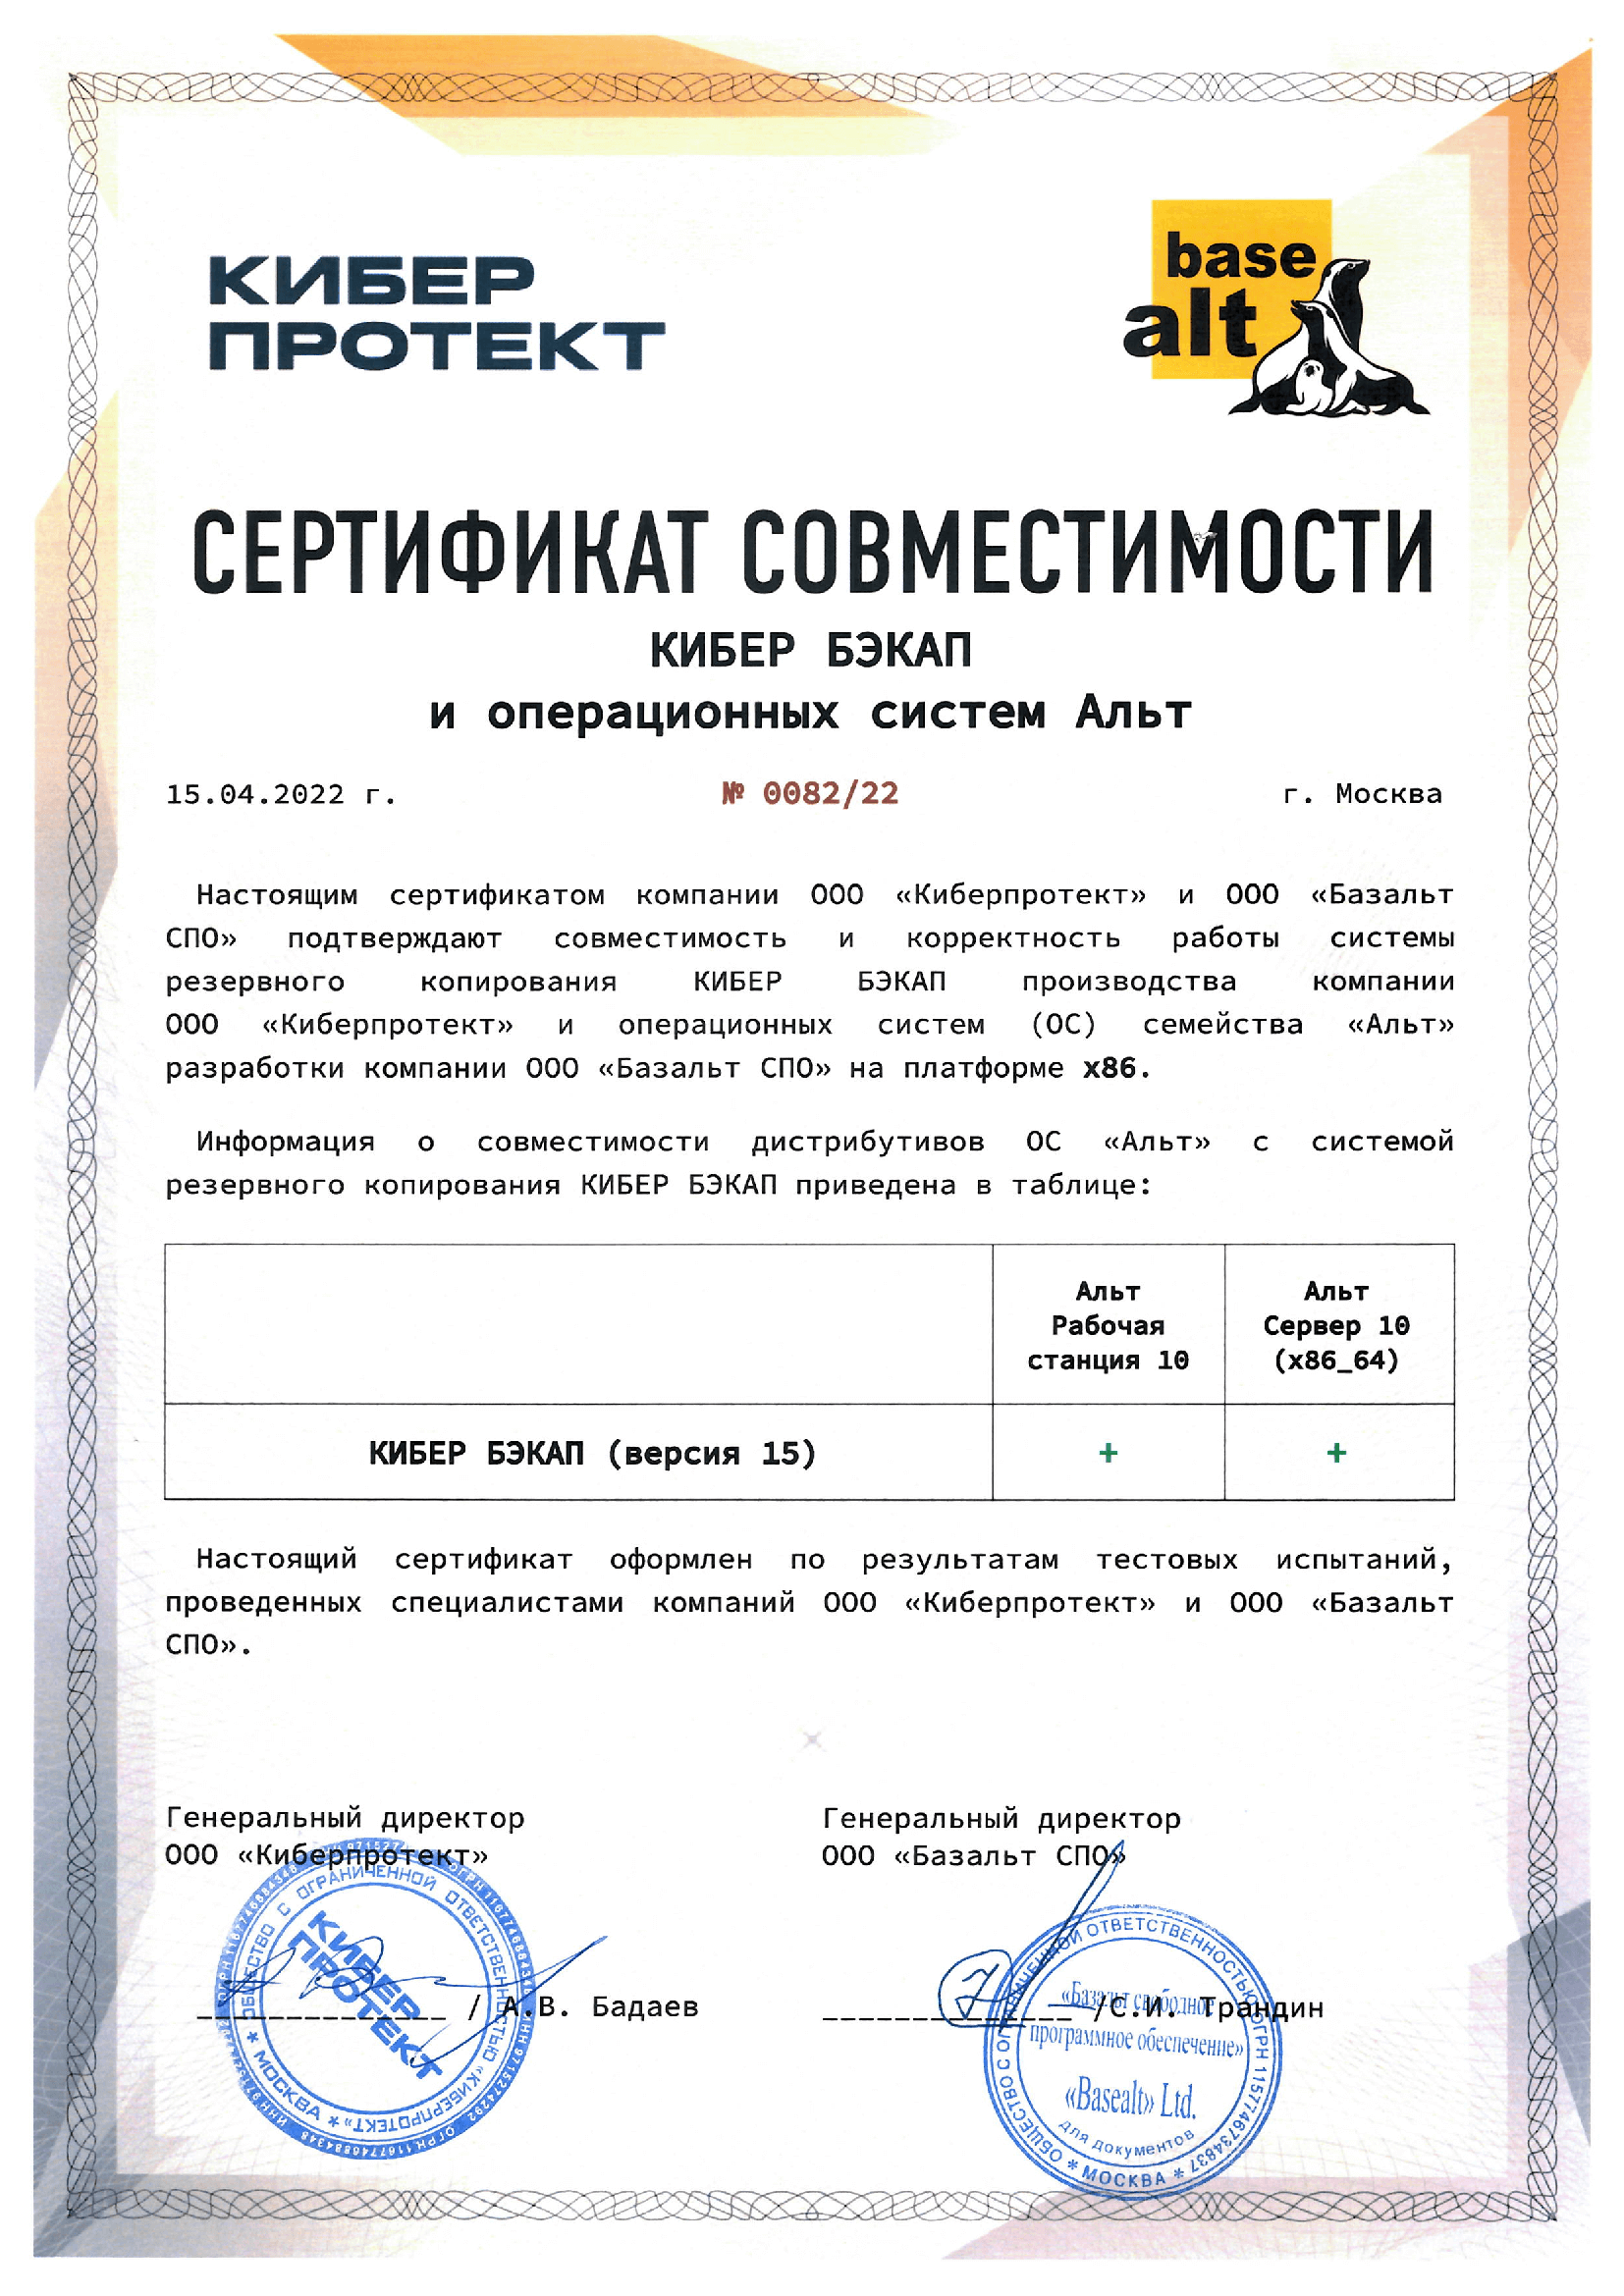 Сертификаты совместимости